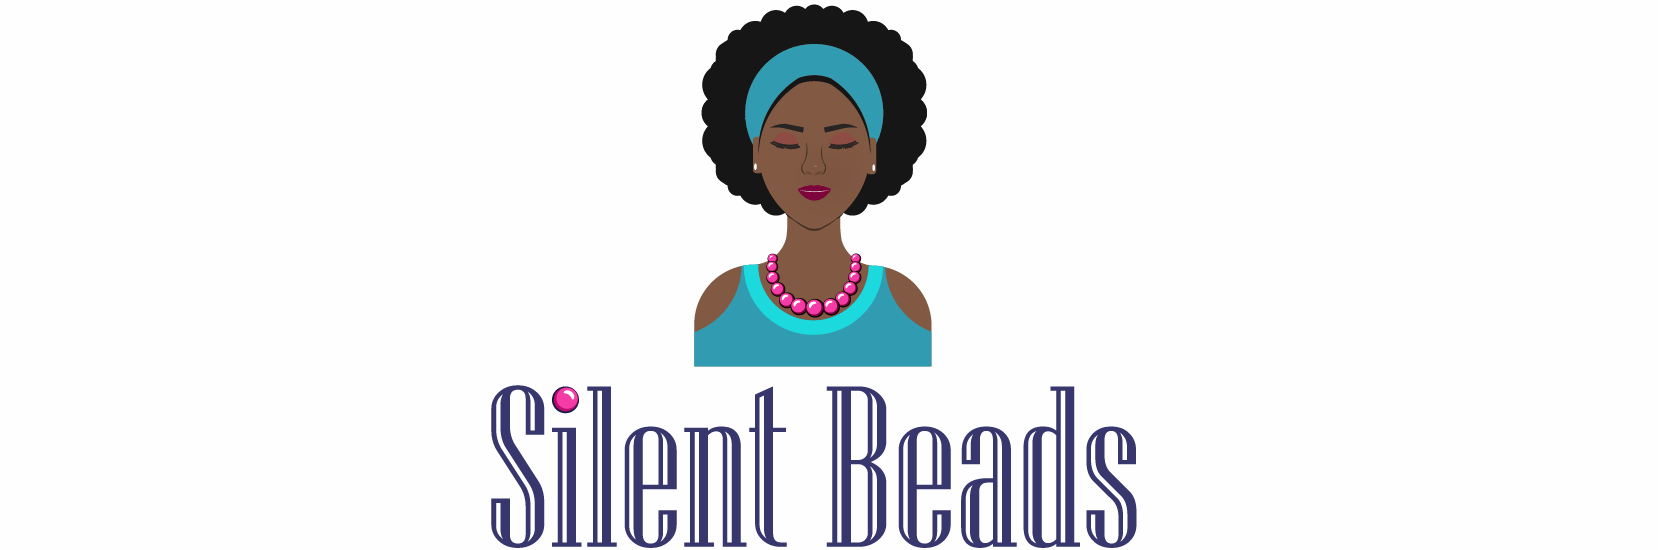 Silent Beads Media